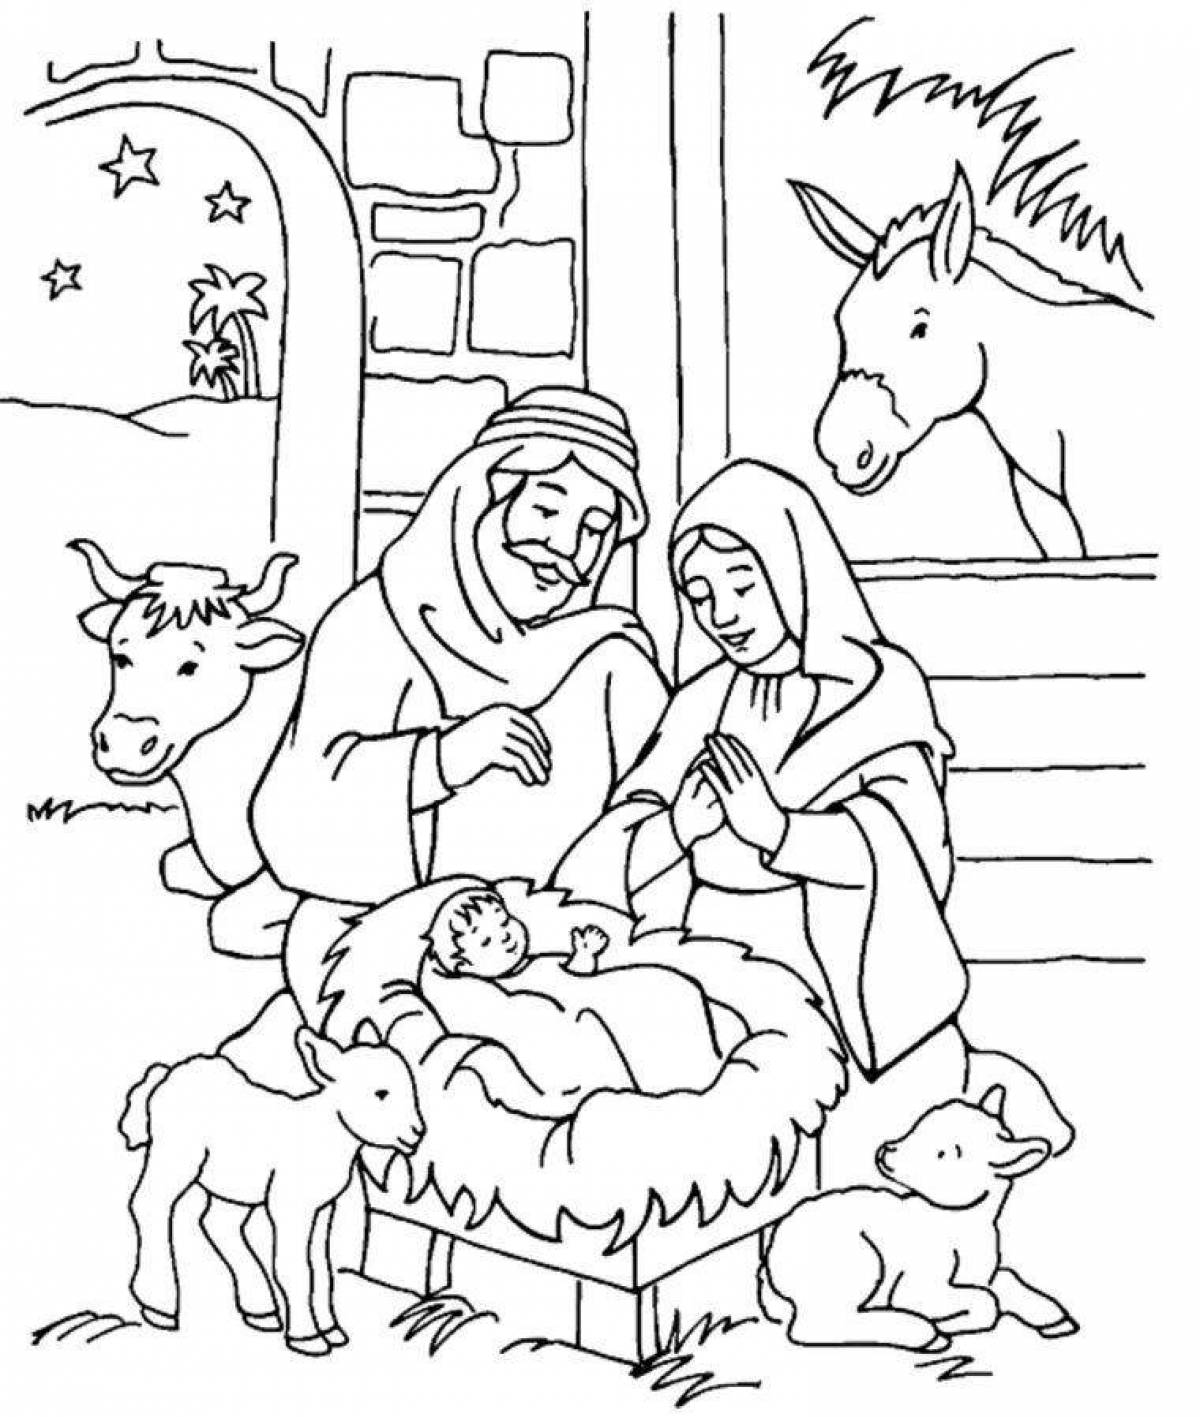 Joy coloring nativity scene for kids